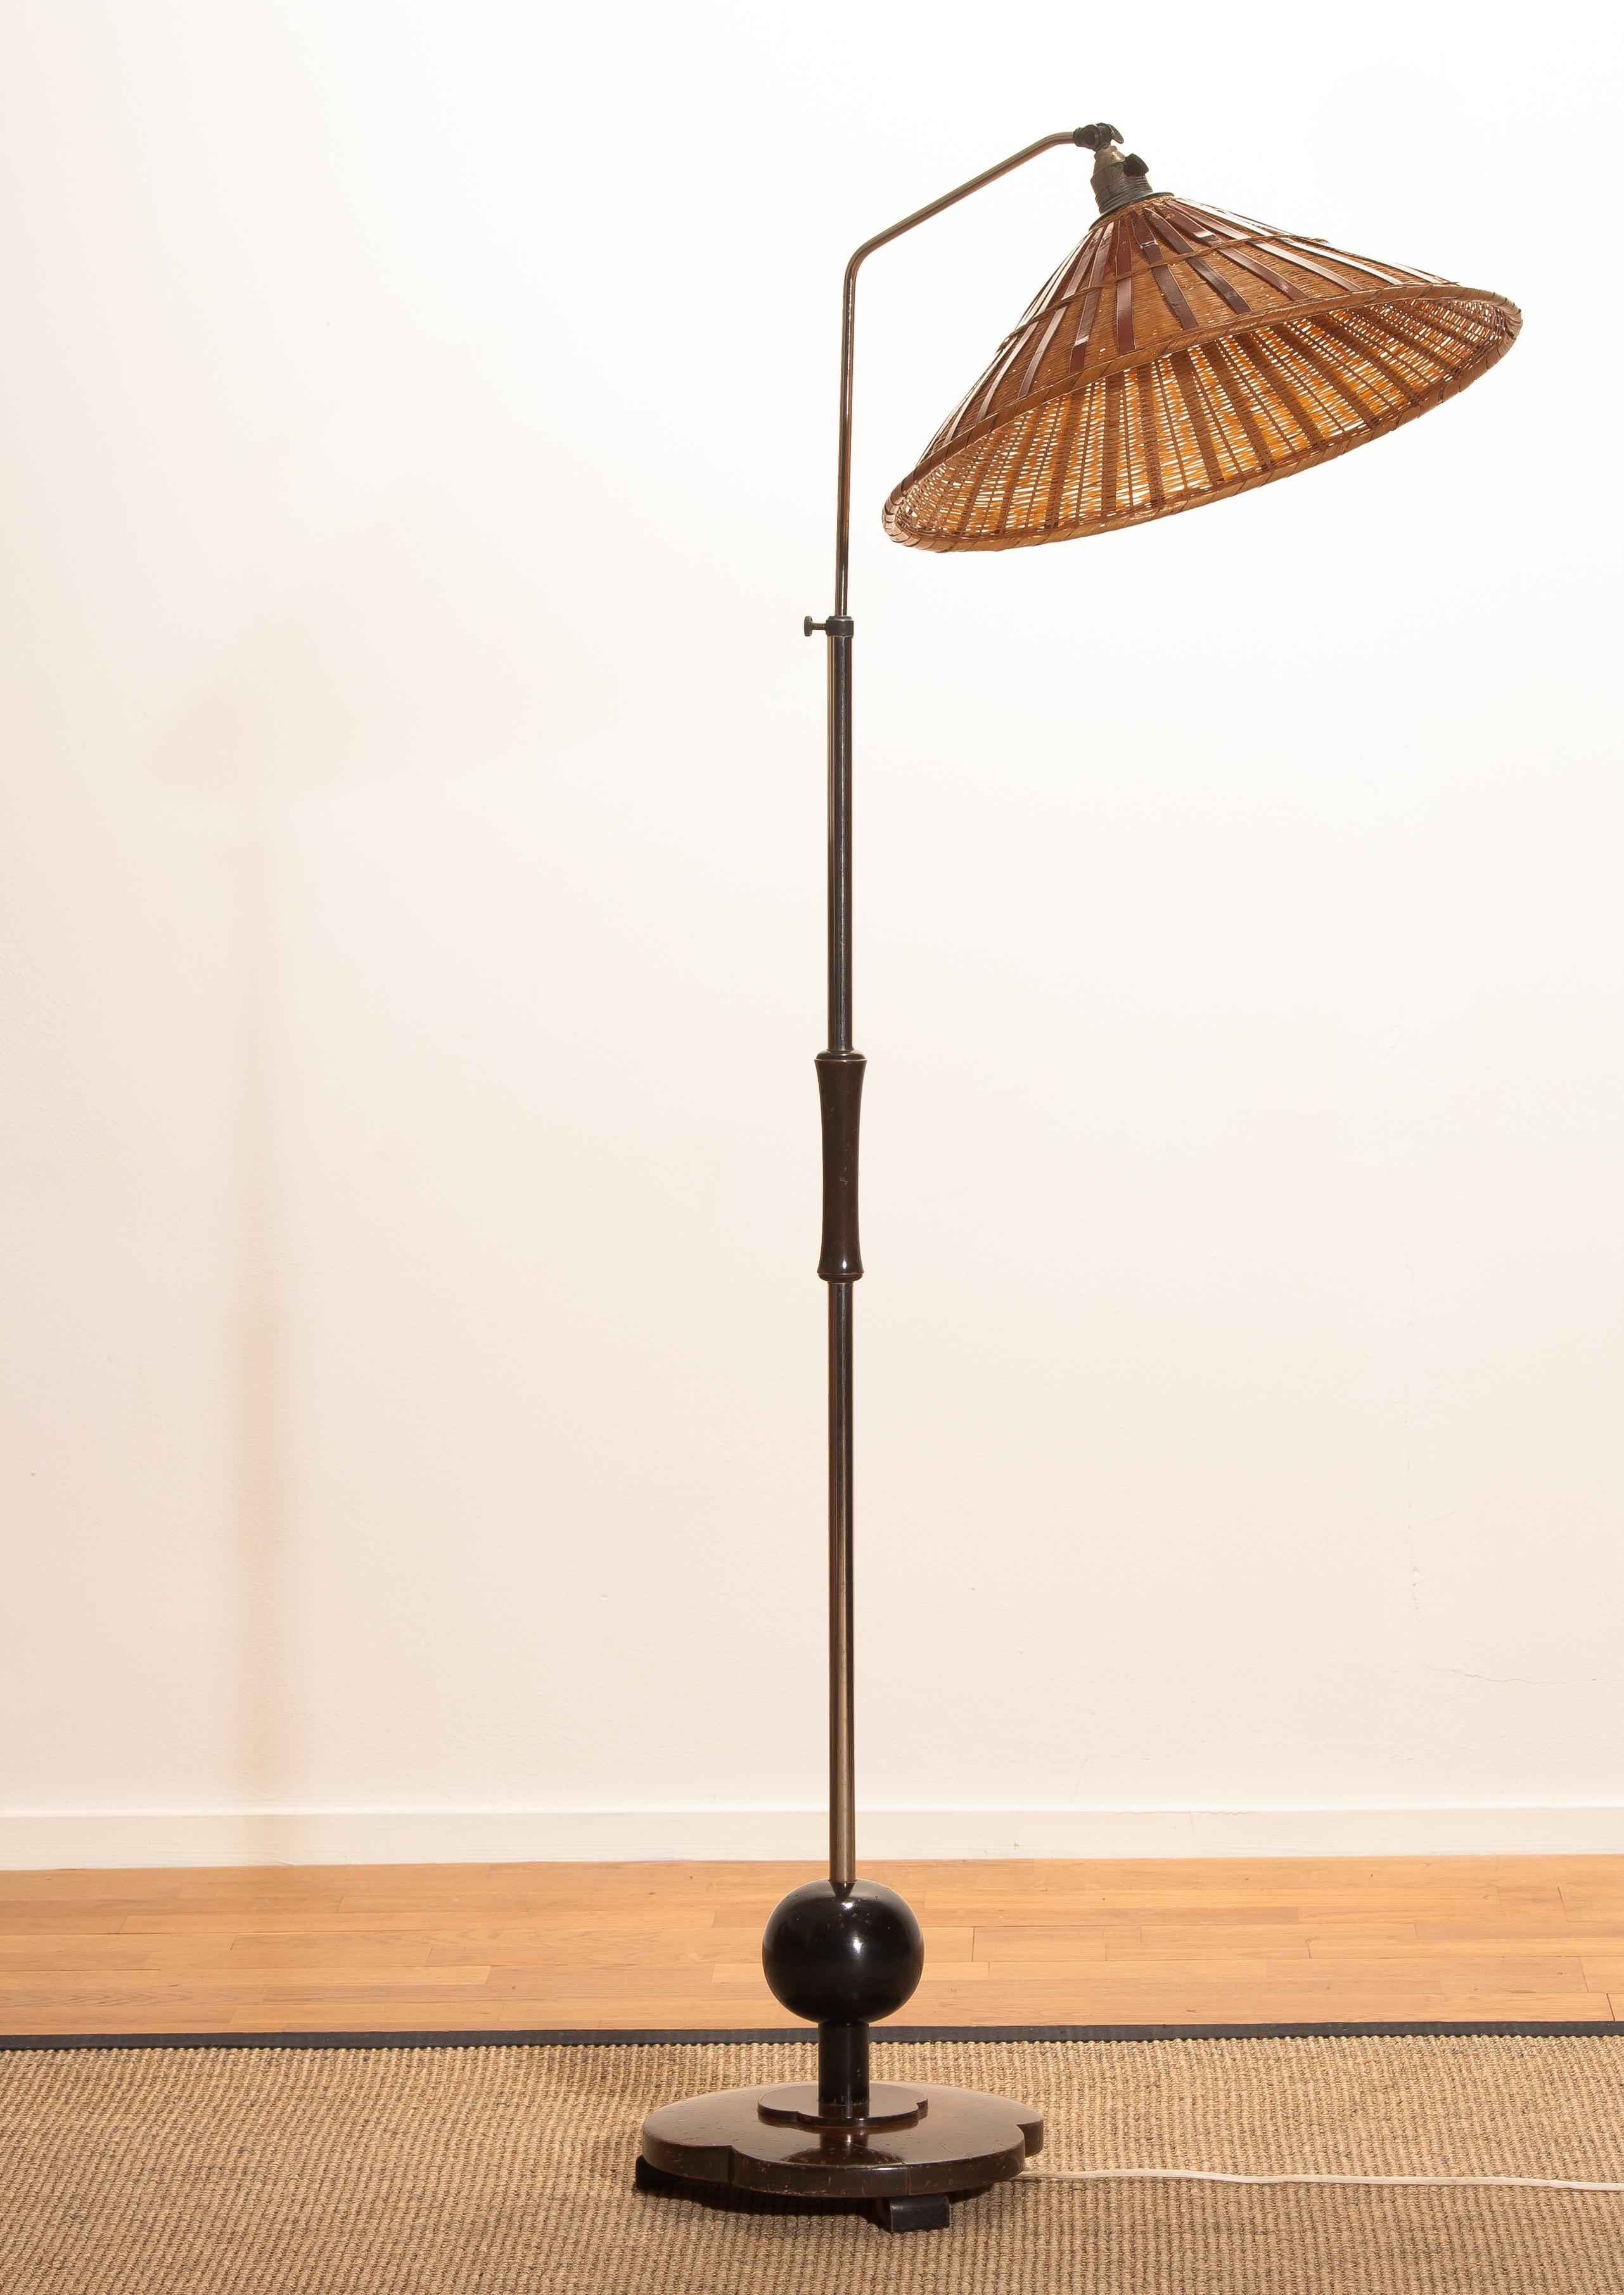 1940s Art Deco Jugendstil Chromed Floor Lamp With Wicker inside proportions 2563 X 3622